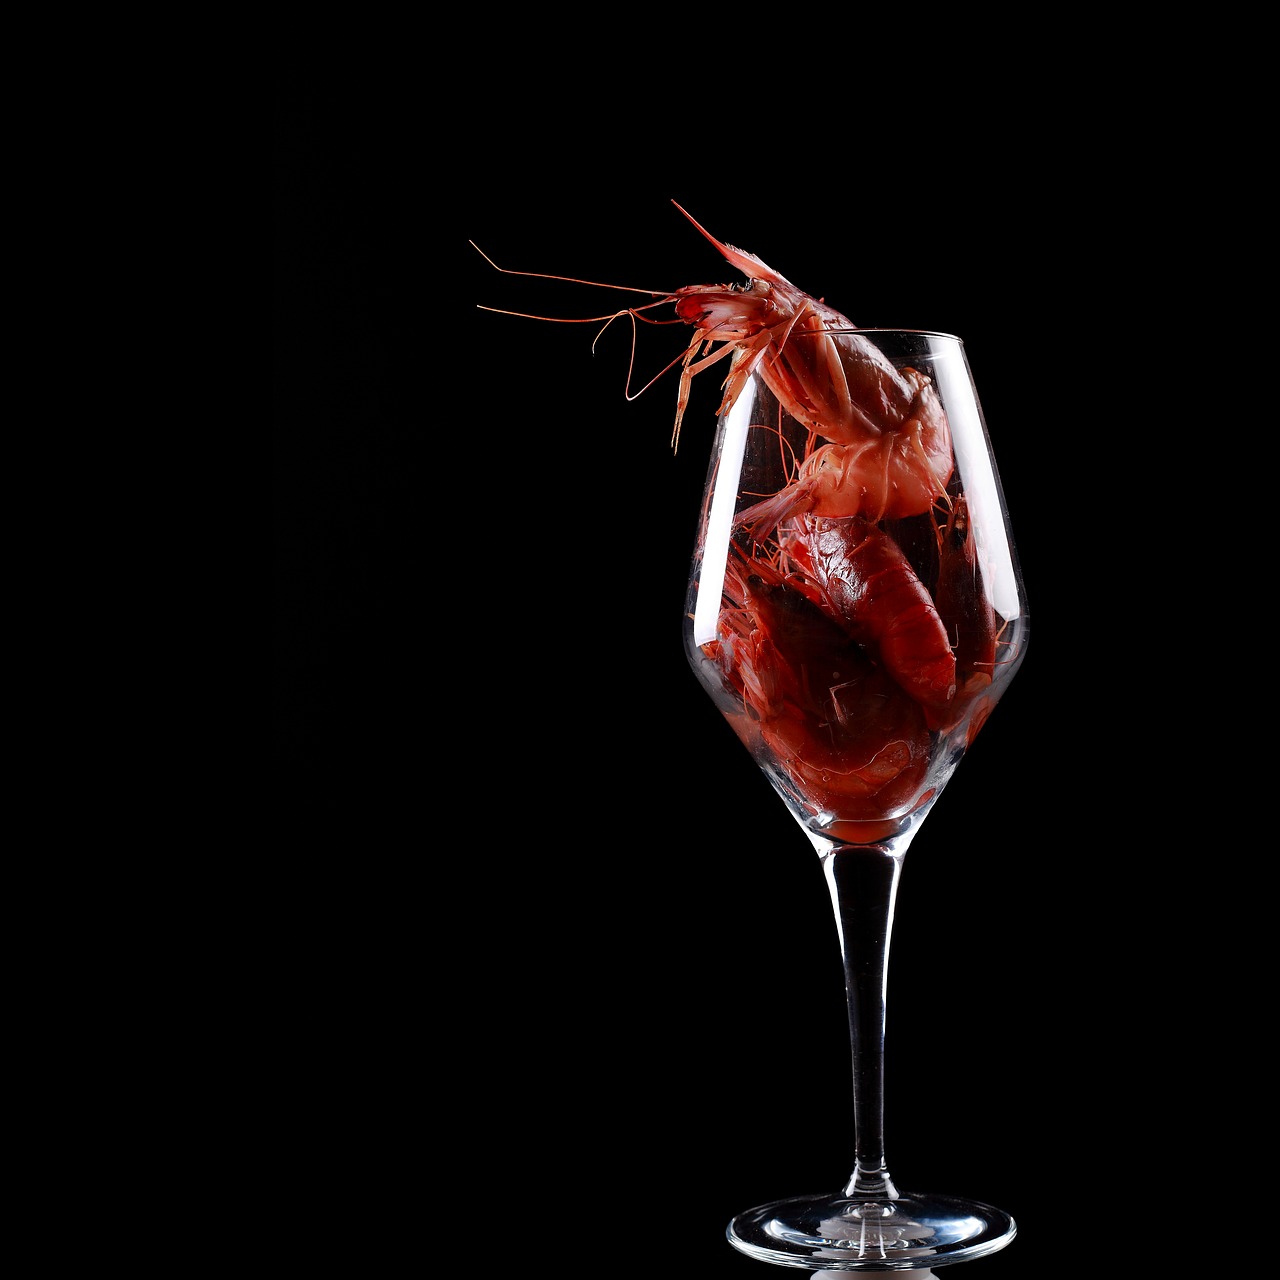 shrimp red glass free photo